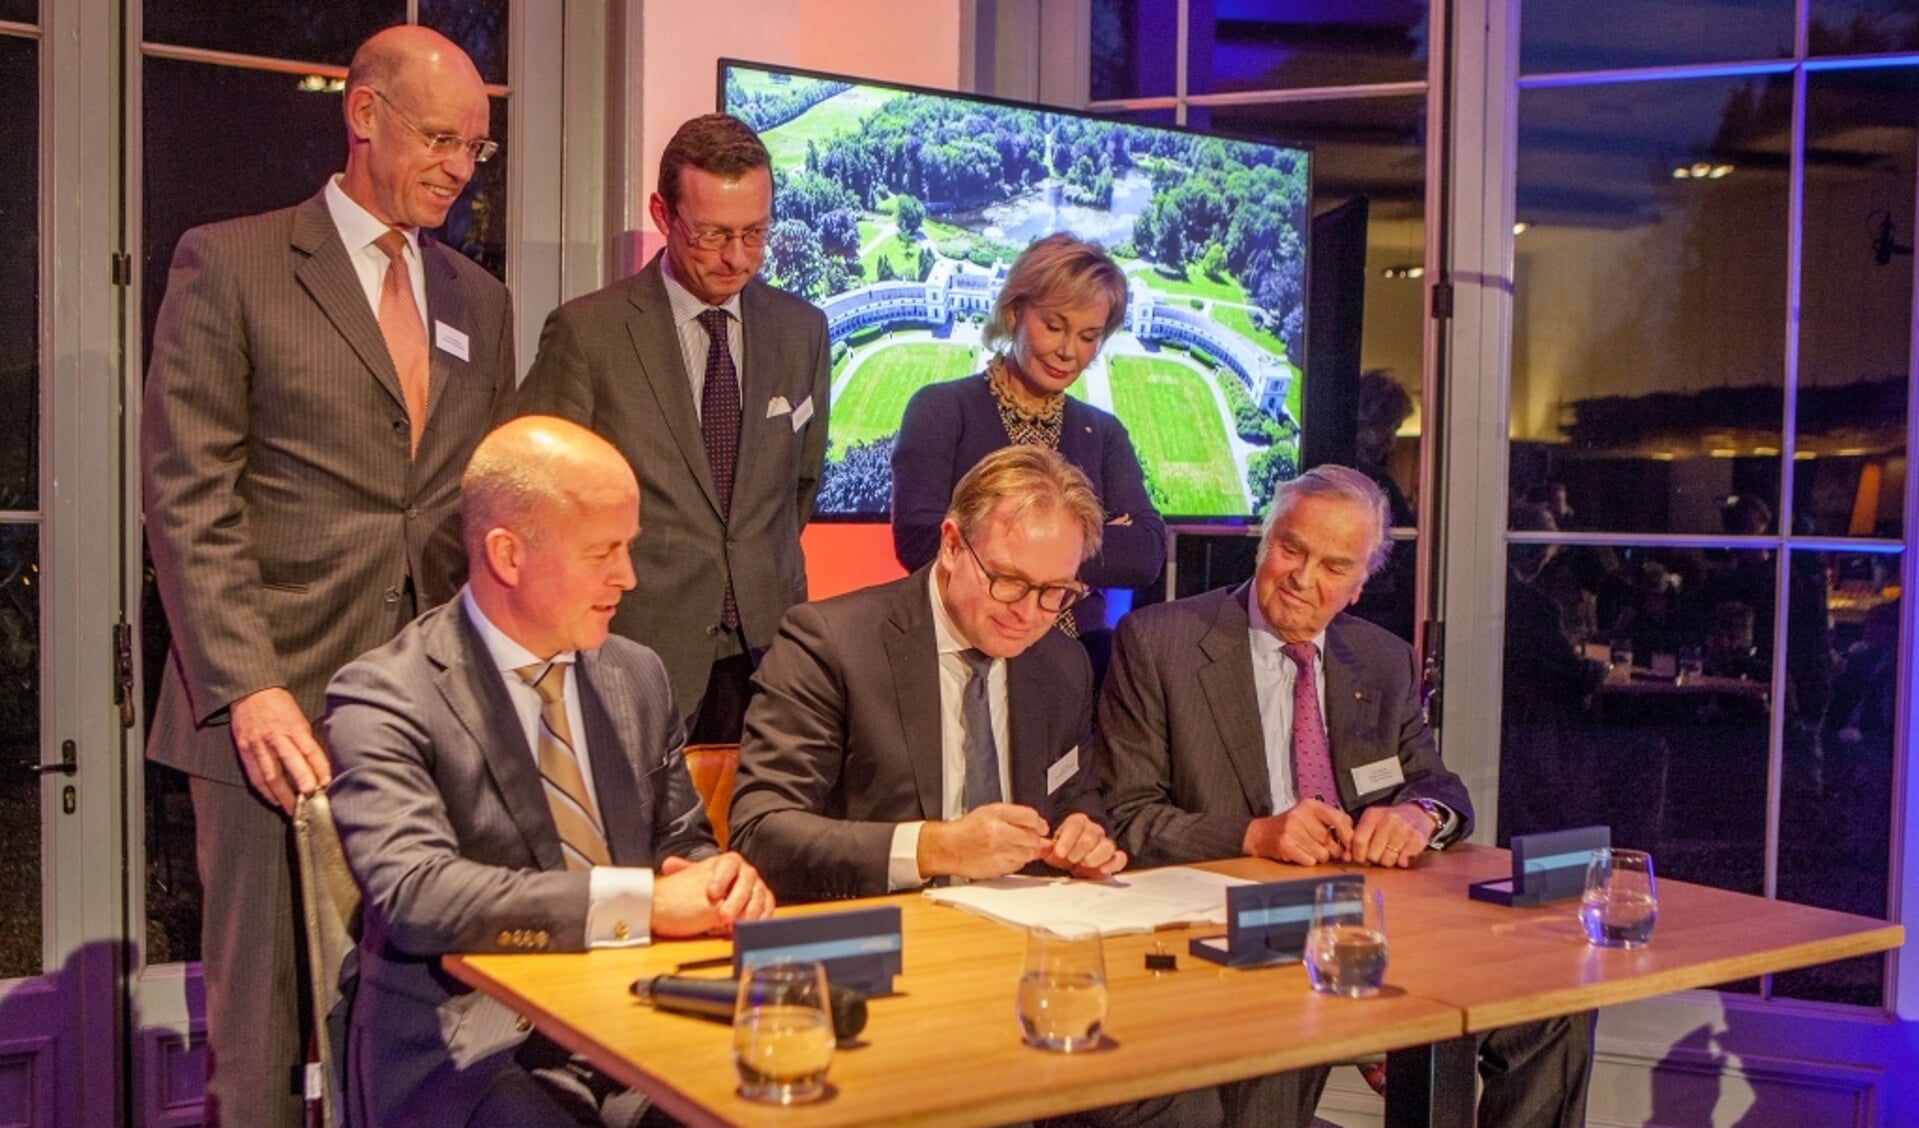 De overdracht van Landgoed Soestdijk op 20 december 2017. Links zittend staatsecretaris Raymond Knops, rechts Ton Meijer. 